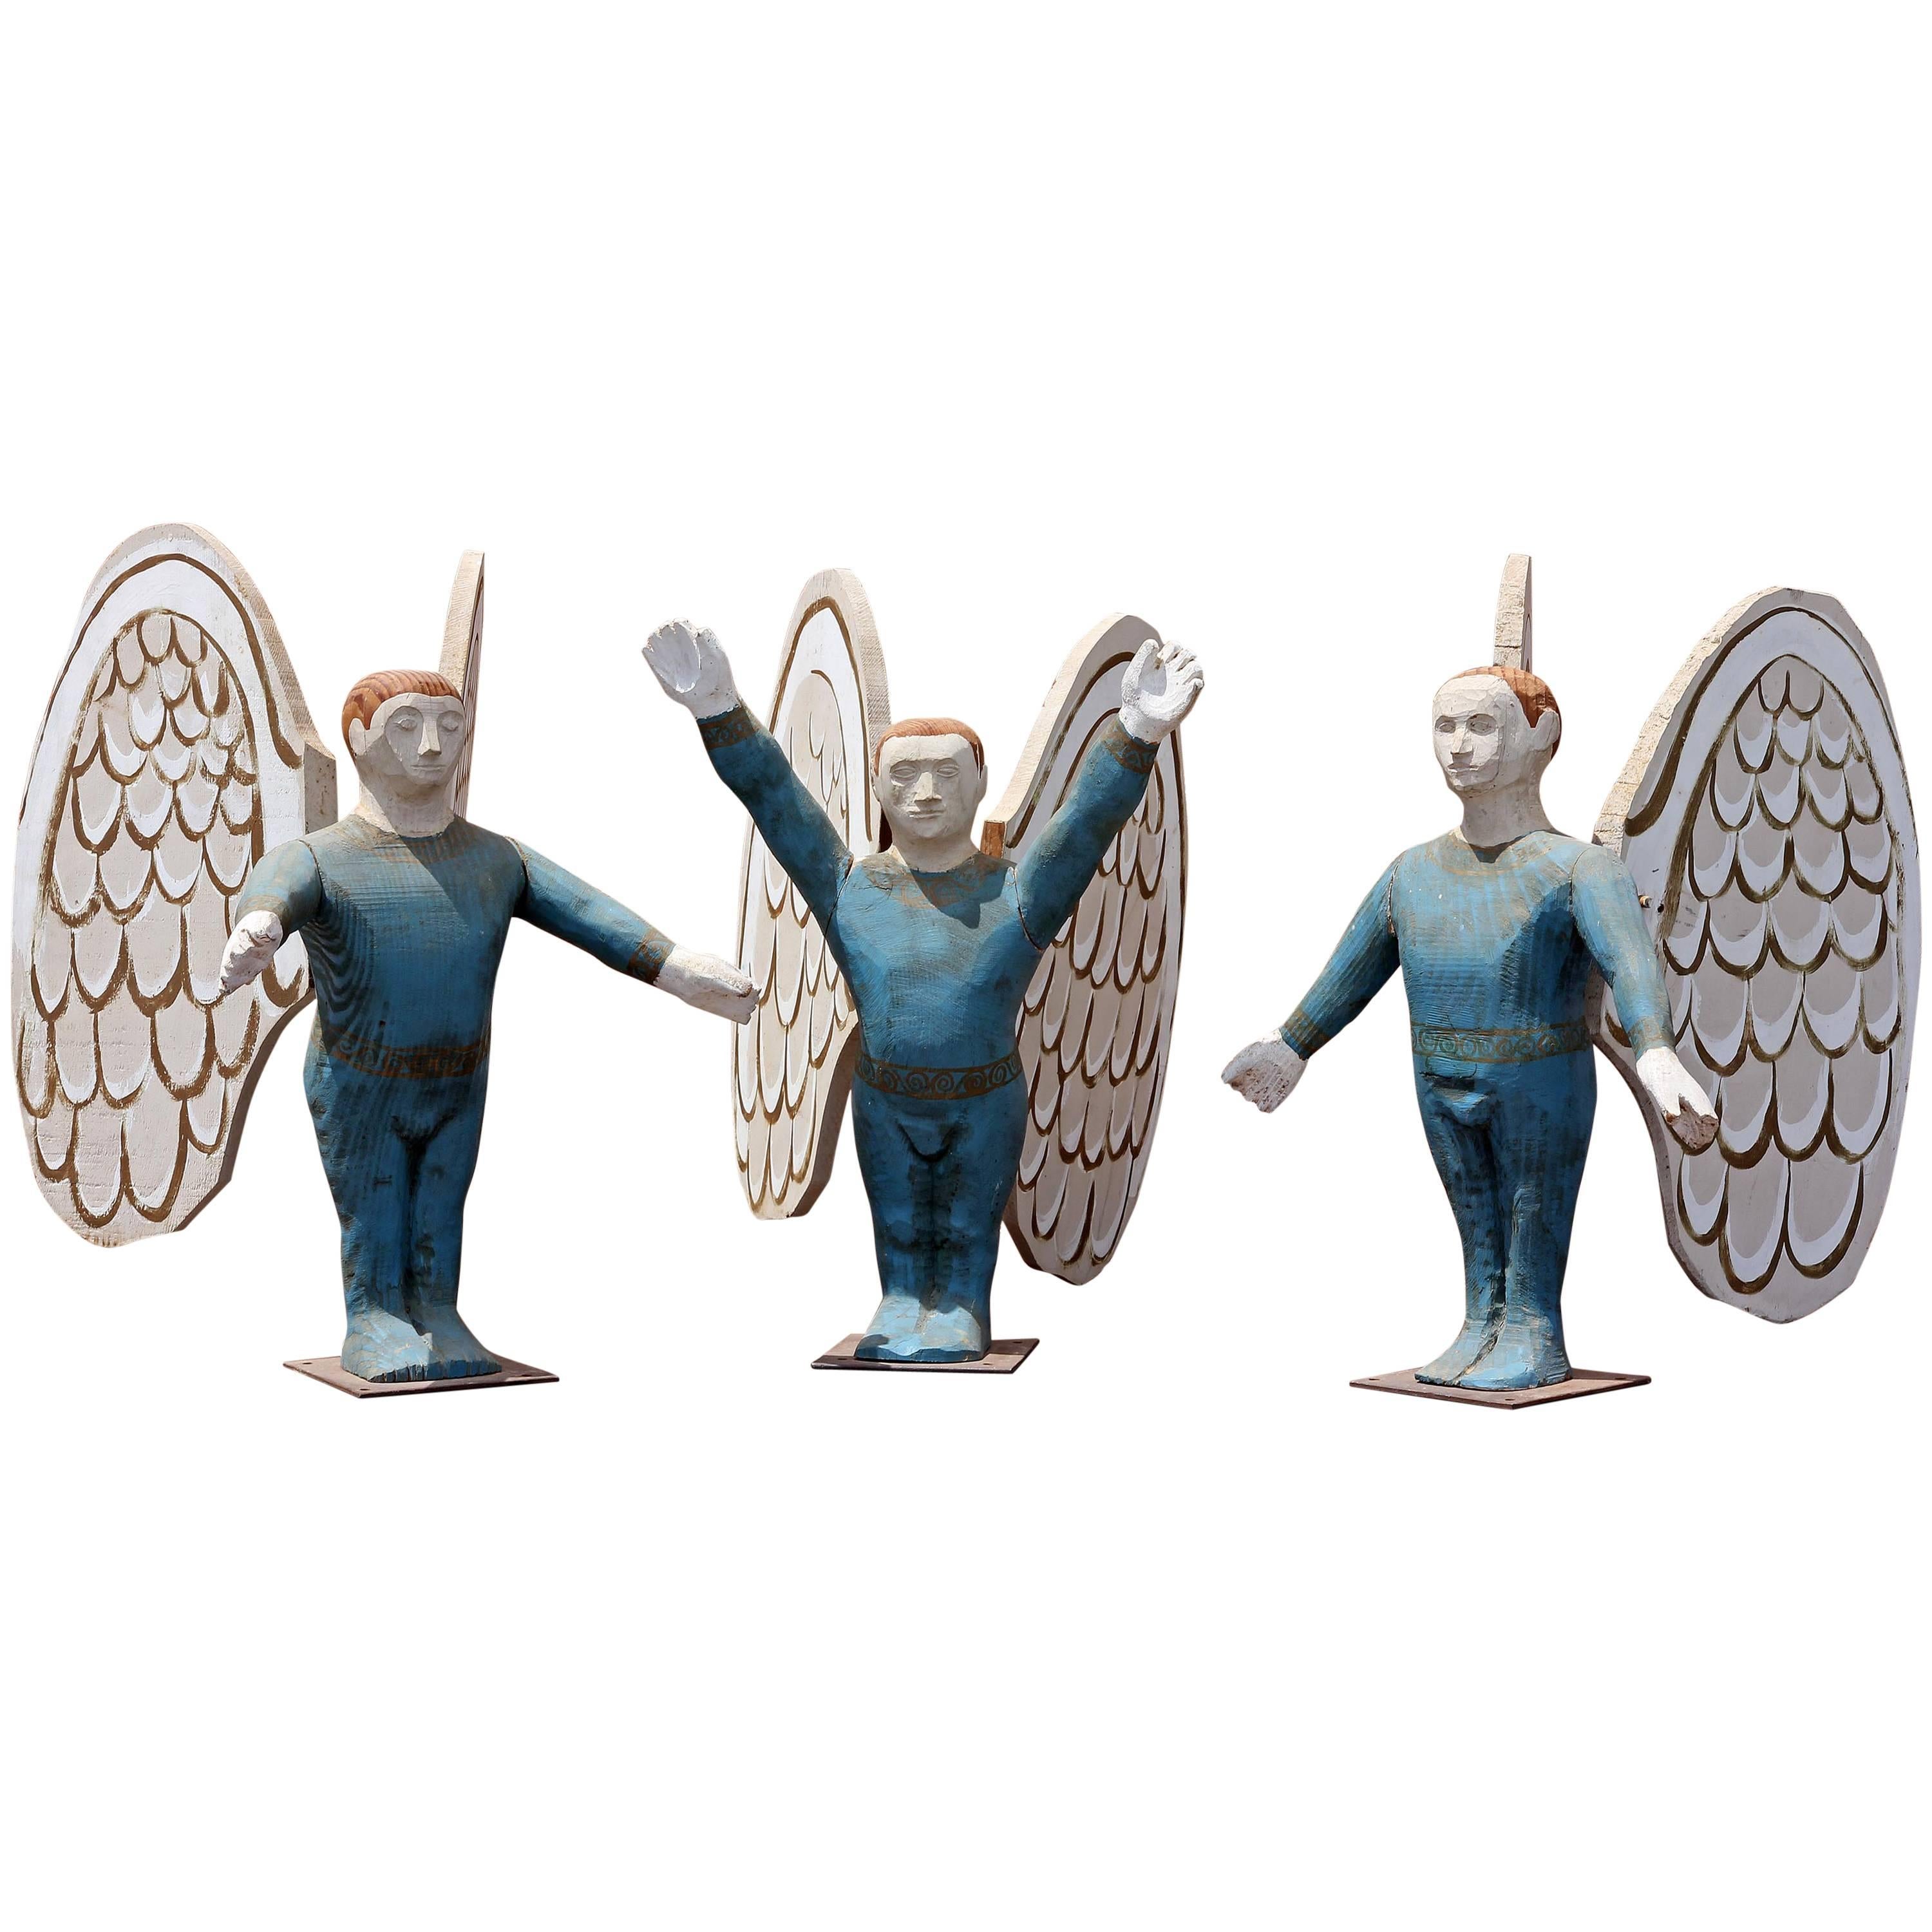 Carved Sculpture Folk Art Angel Acrobats